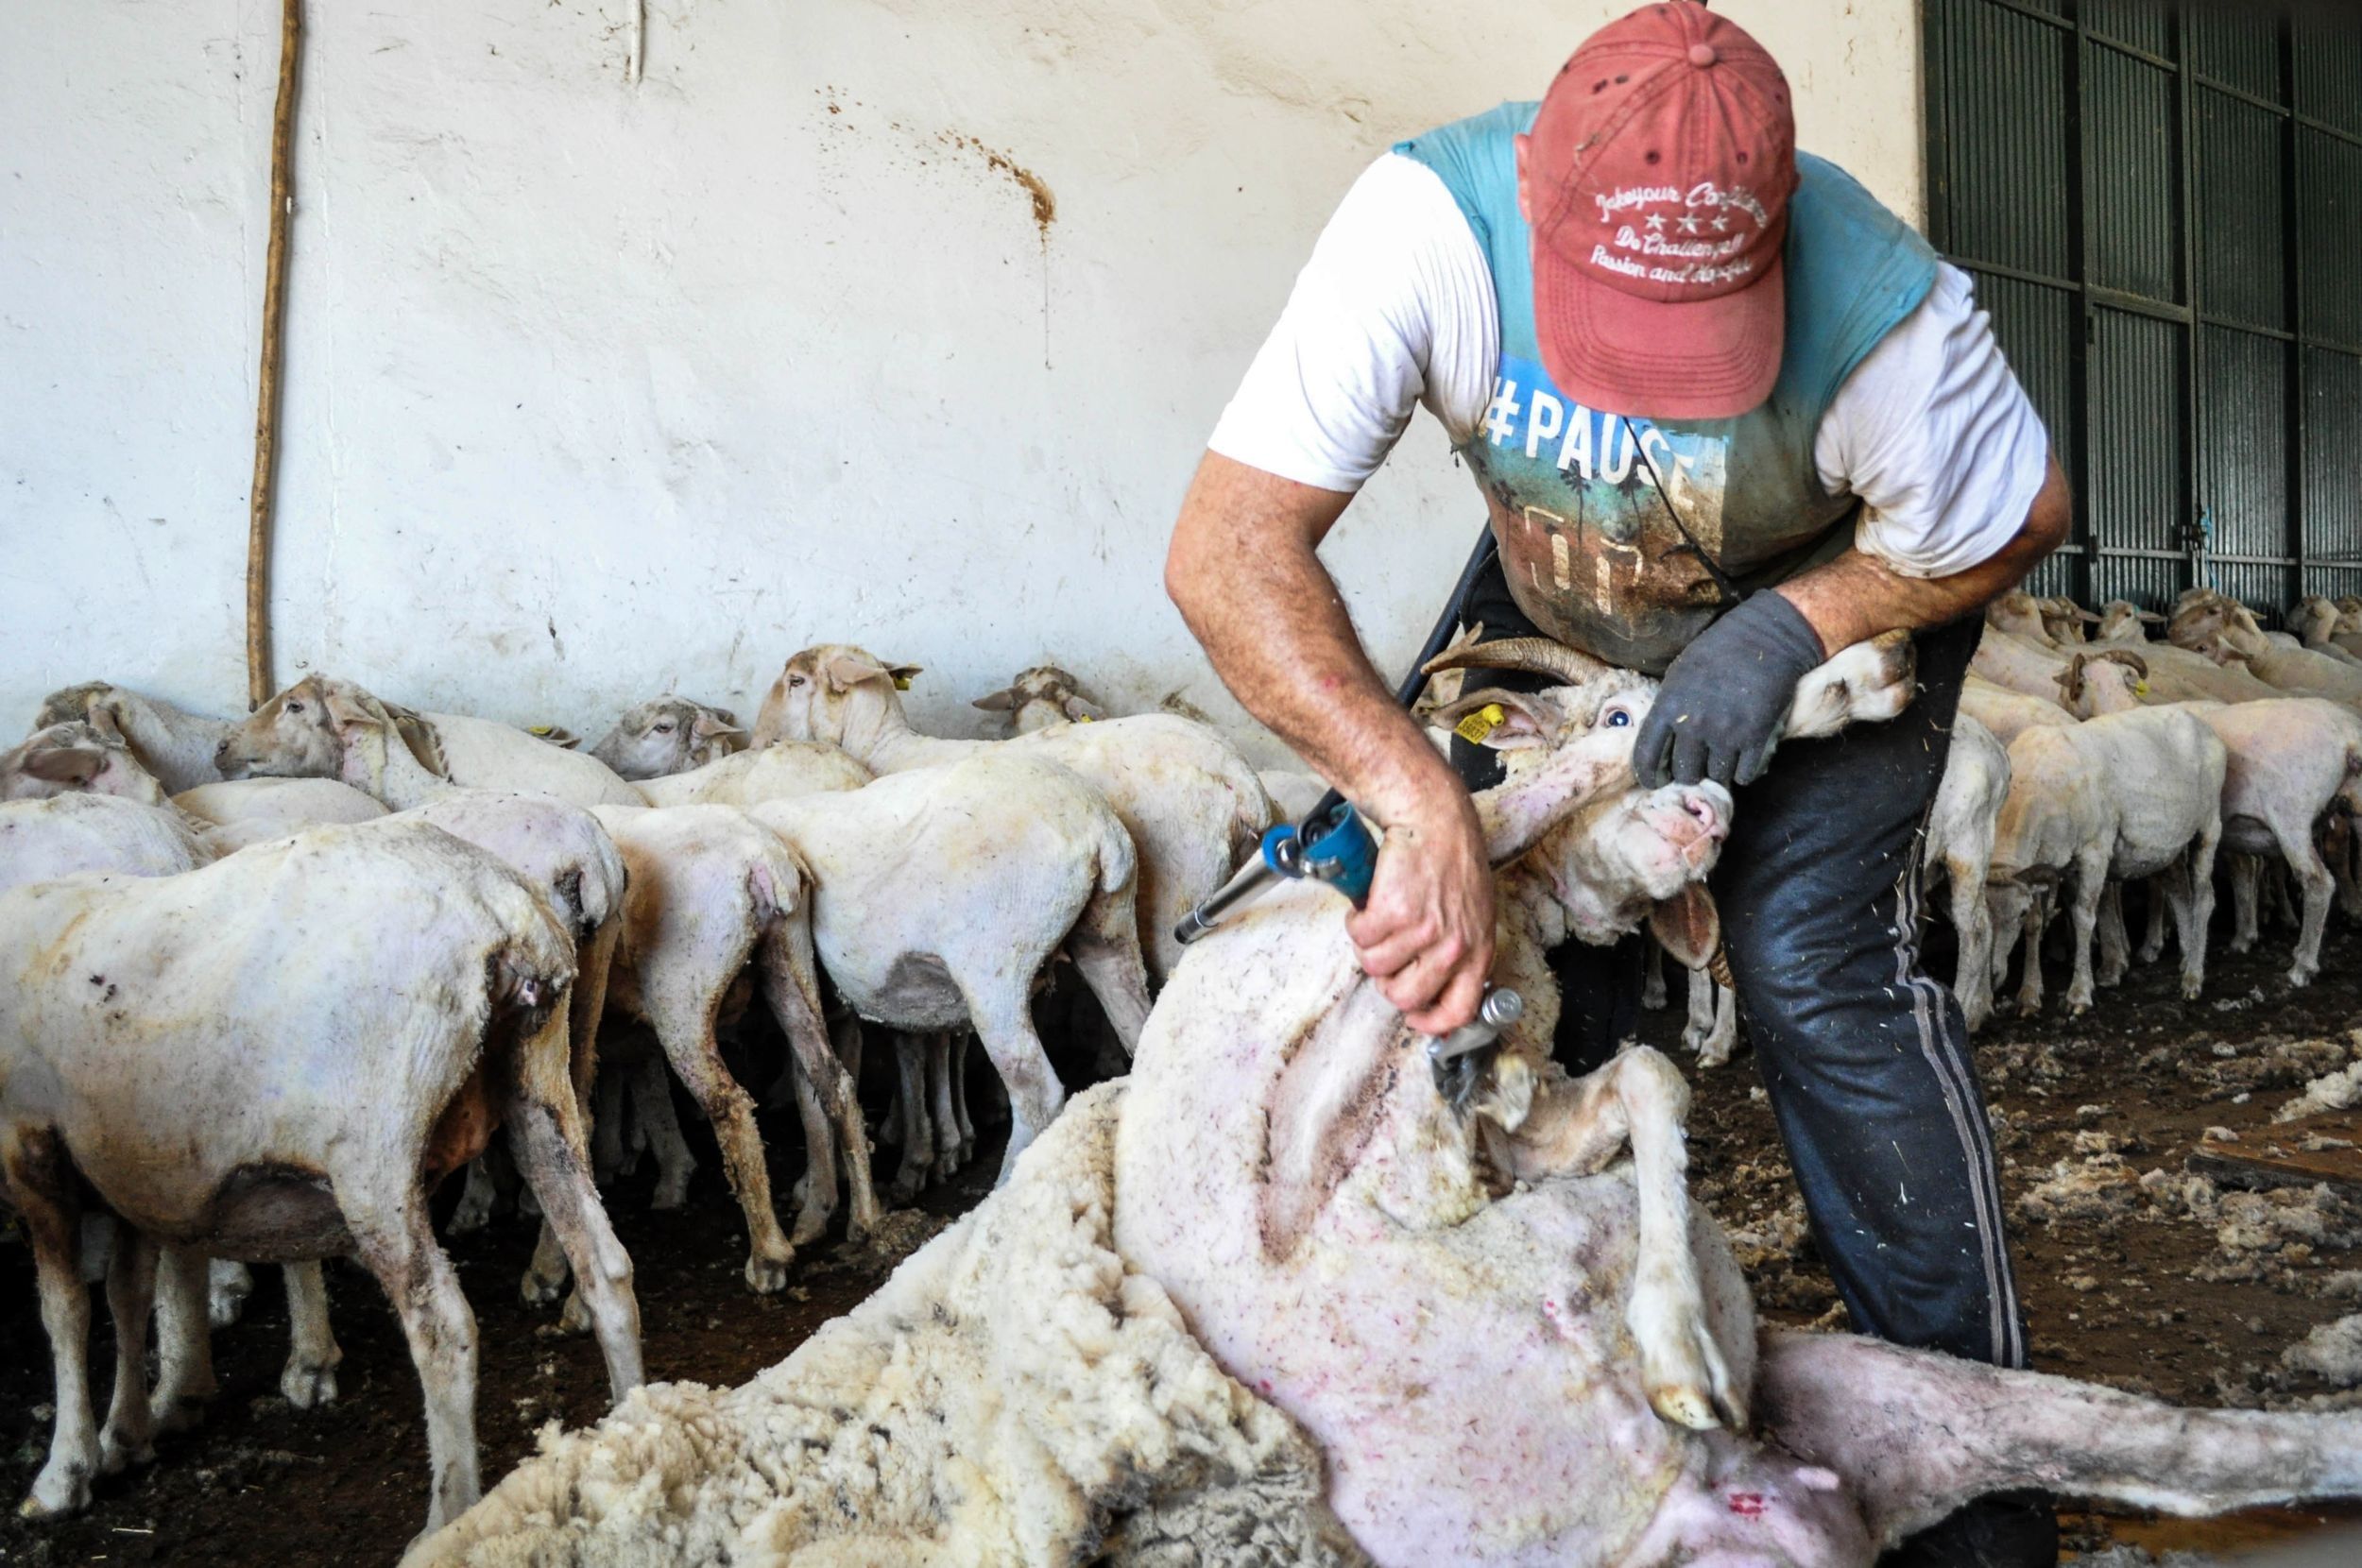 Sospechan que la cepa brasileña está en Extremadura por un brote con 23 casos - Foto: Europa Press 